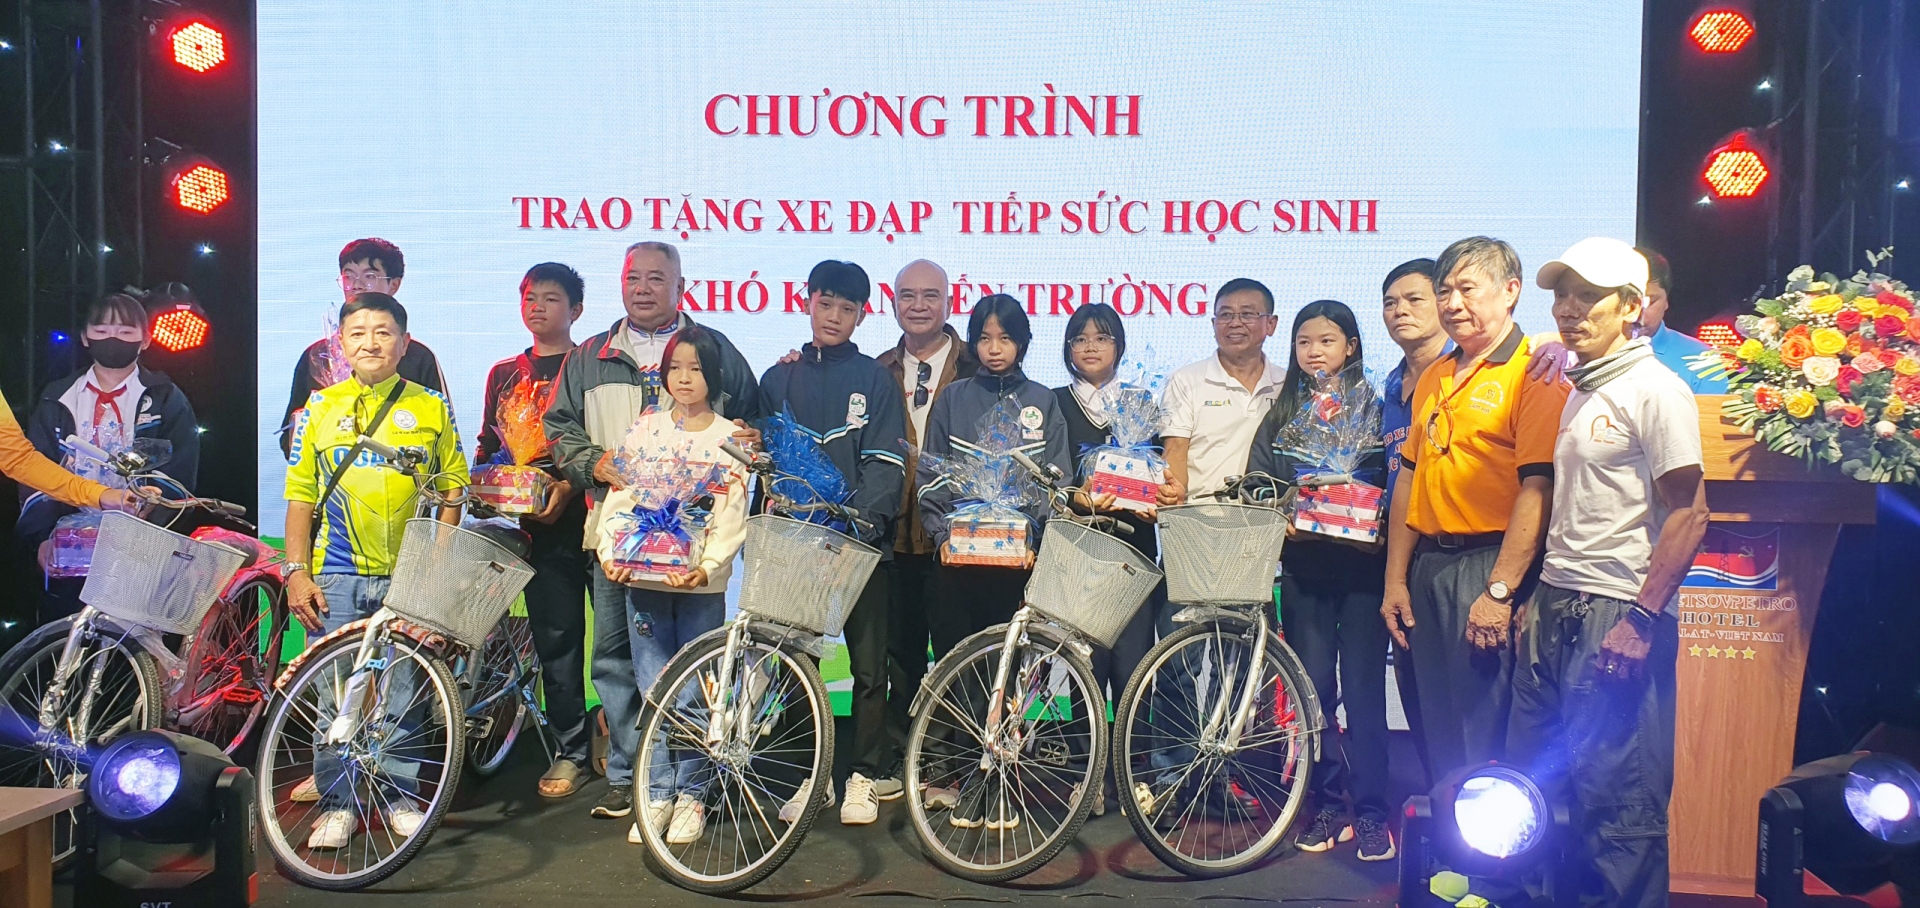 Đại diện các Câu lạc bộ xe đạp của tỉnh Lâm Đồng và các tỉnh bạn trao tặng xe đạp cho học sinh Đà Lạt